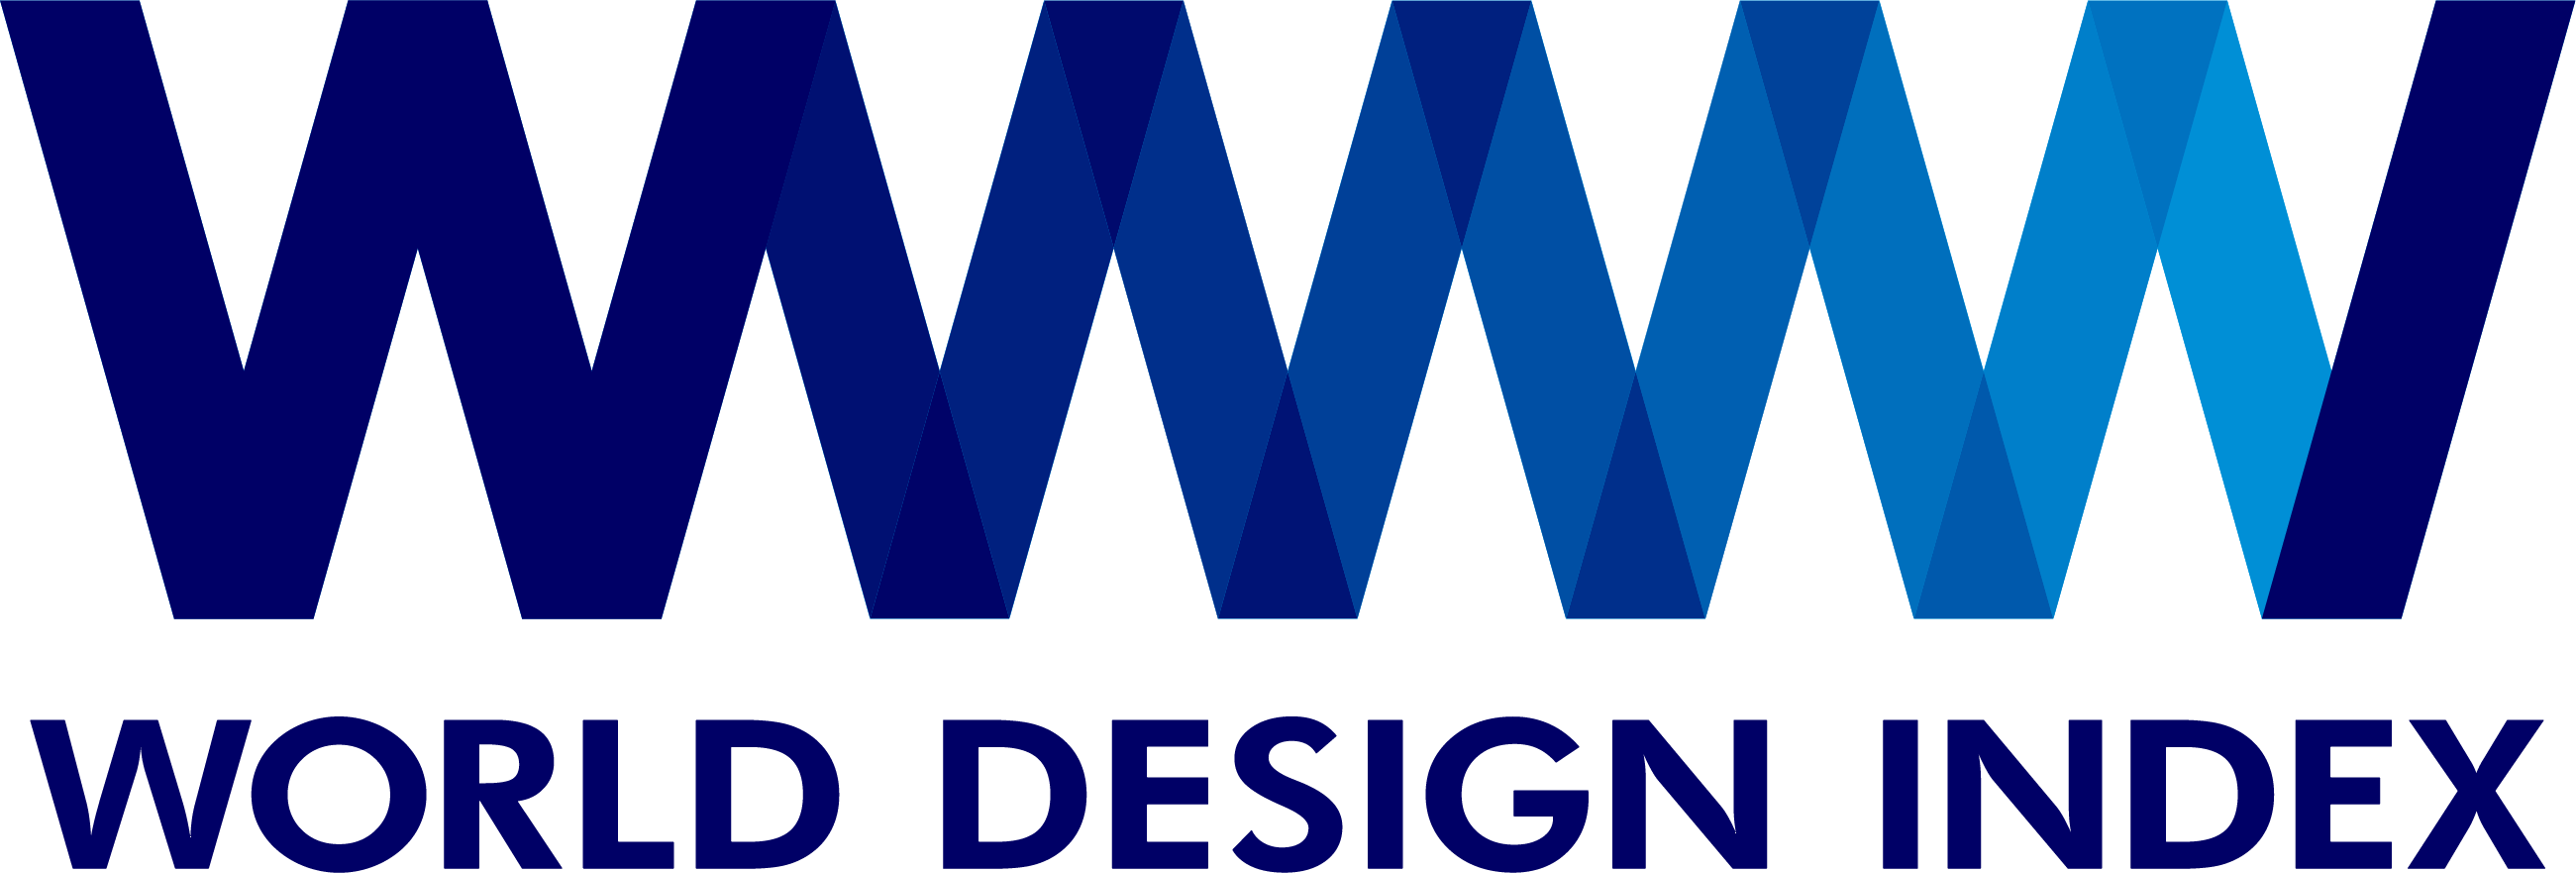 World Design Index logo